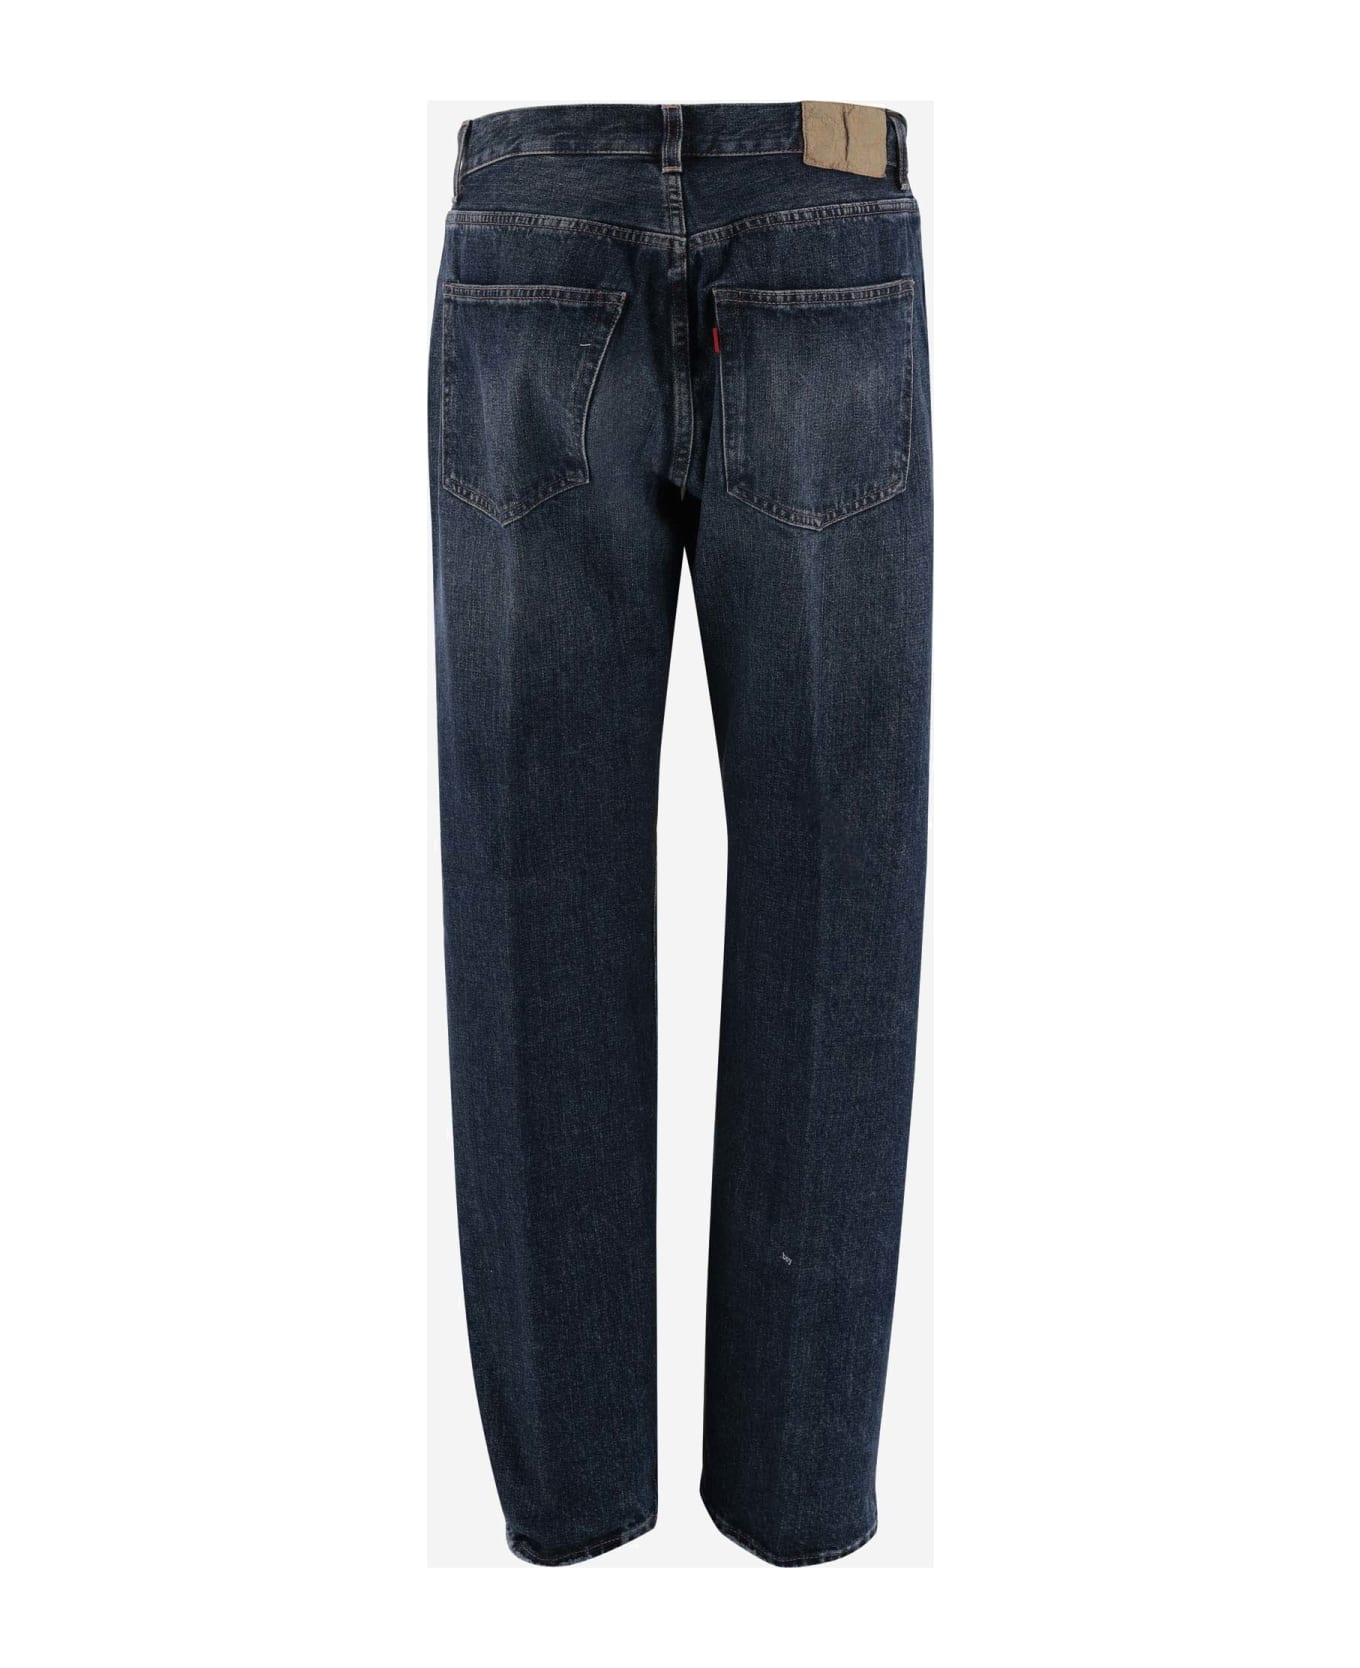 Made in Tomboy Cotton Denim Jeans - Denim